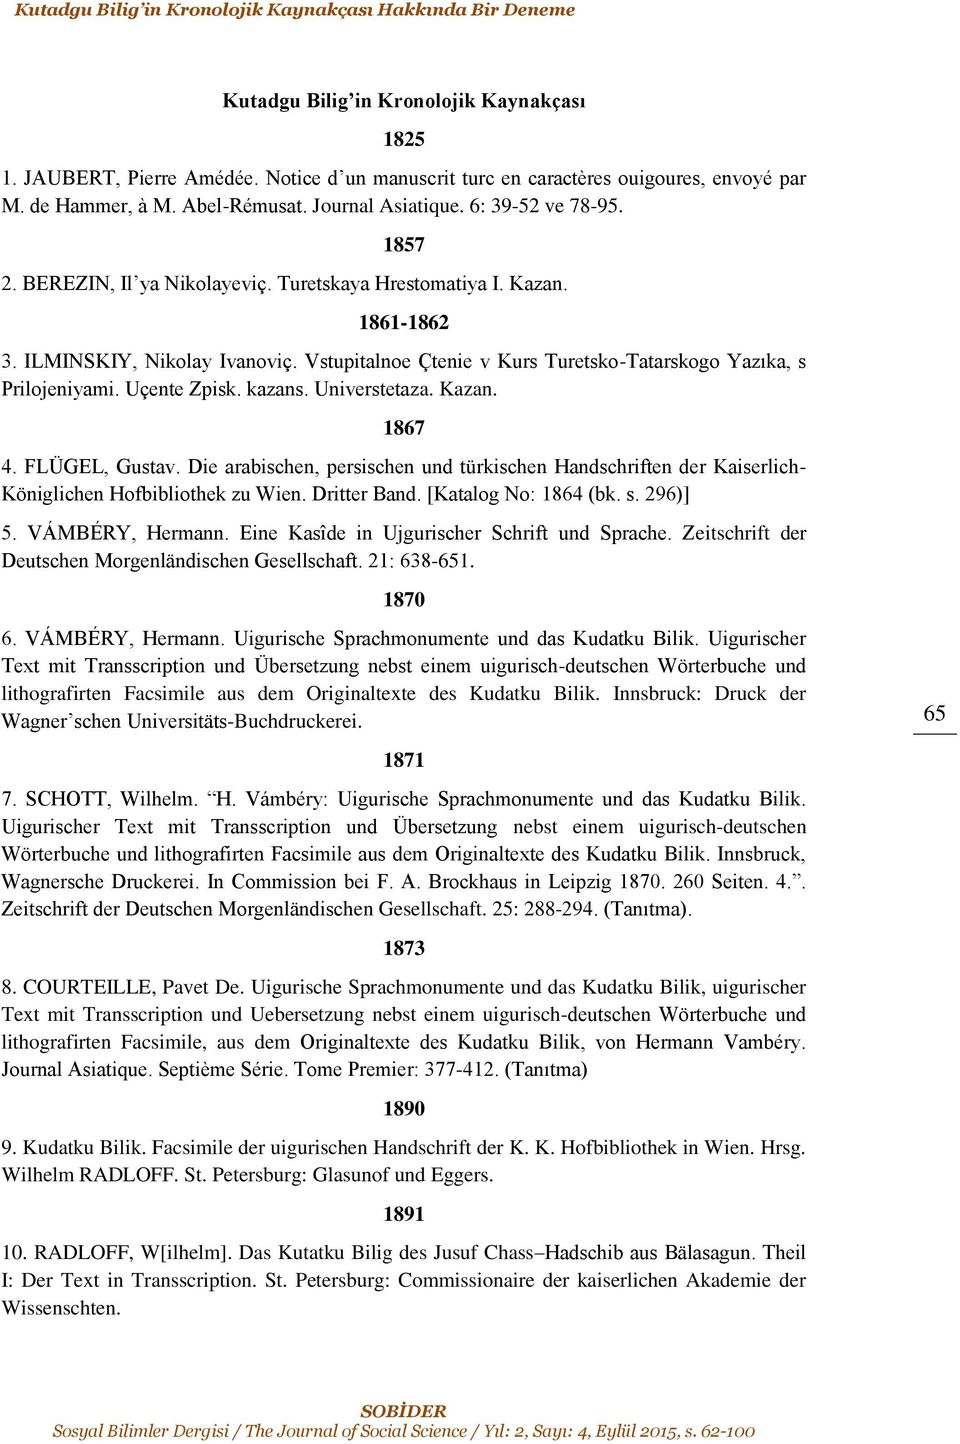 Vstupitalnoe Çtenie v Kurs Turetsko-Tatarskogo Yazıka, s Prilojeniyami. Uçente Zpisk. kazans. Universtetaza. Kazan. 1867 4. FLÜGEL, Gustav.